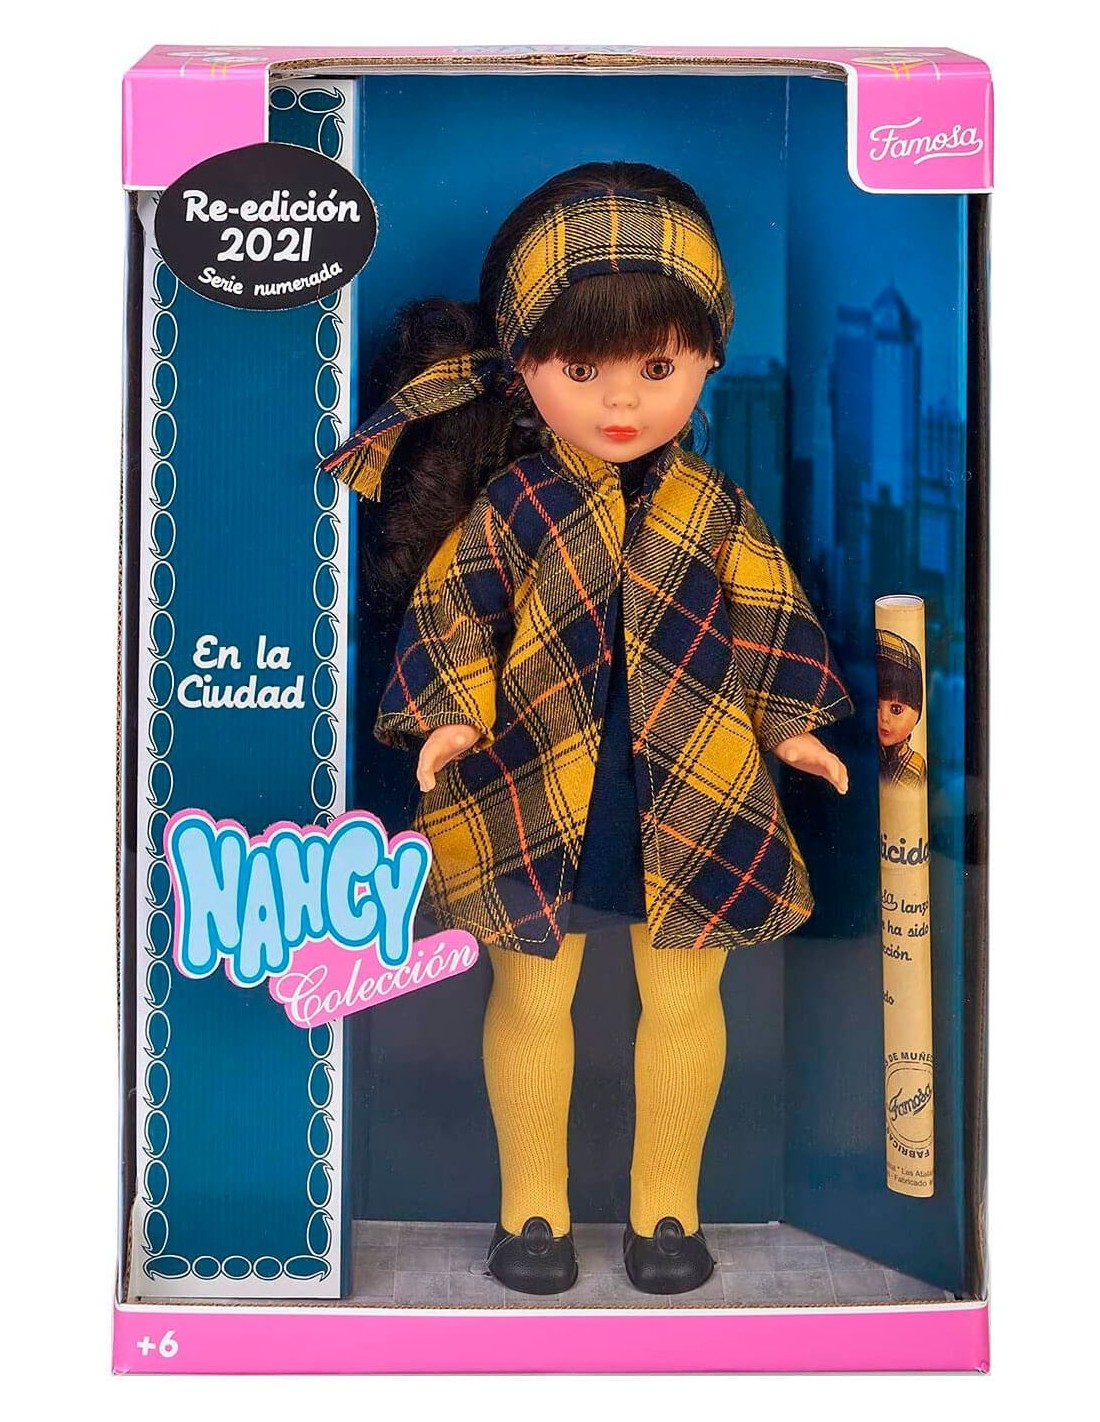 Nancy Colección En la Ciudad Diversal.es - Tienda de muñecas, juguetes disfraces